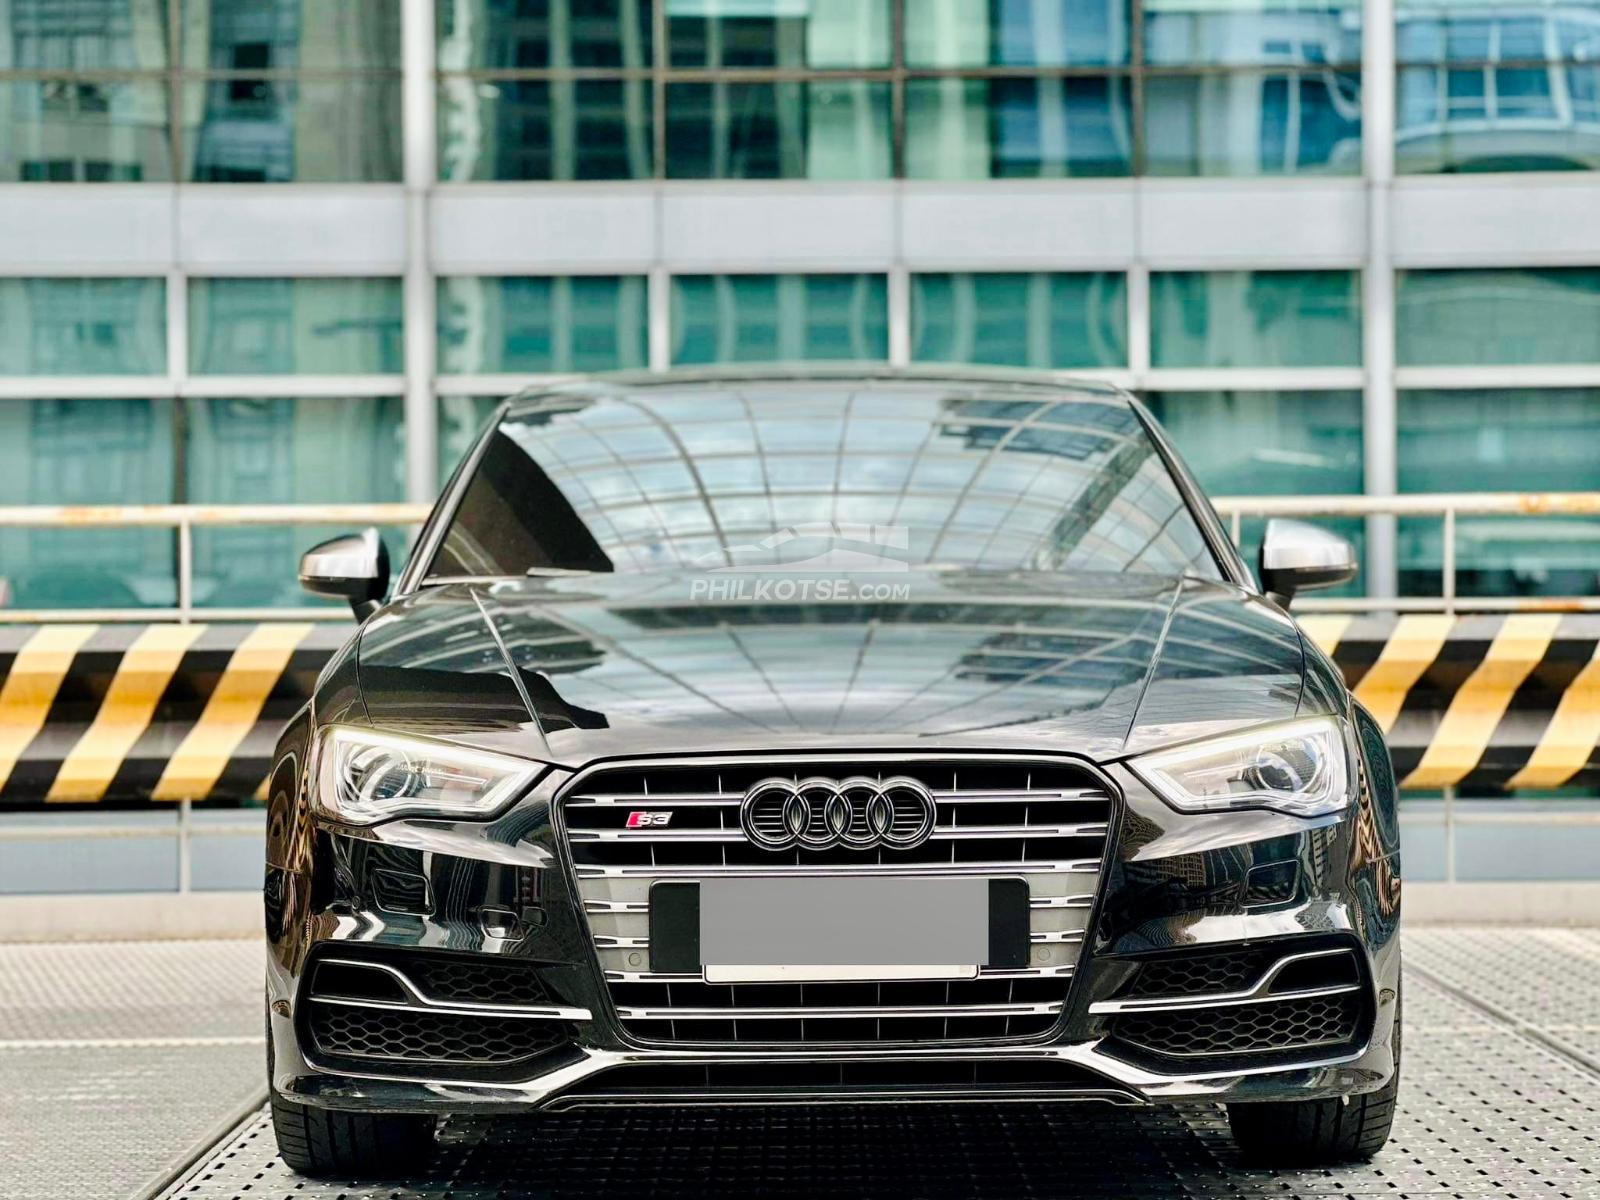 NEW ARRIVAL‼️ 2016 Audi S3 Quattro TFSi 2.0 Sport Automatic Gasoline‼️